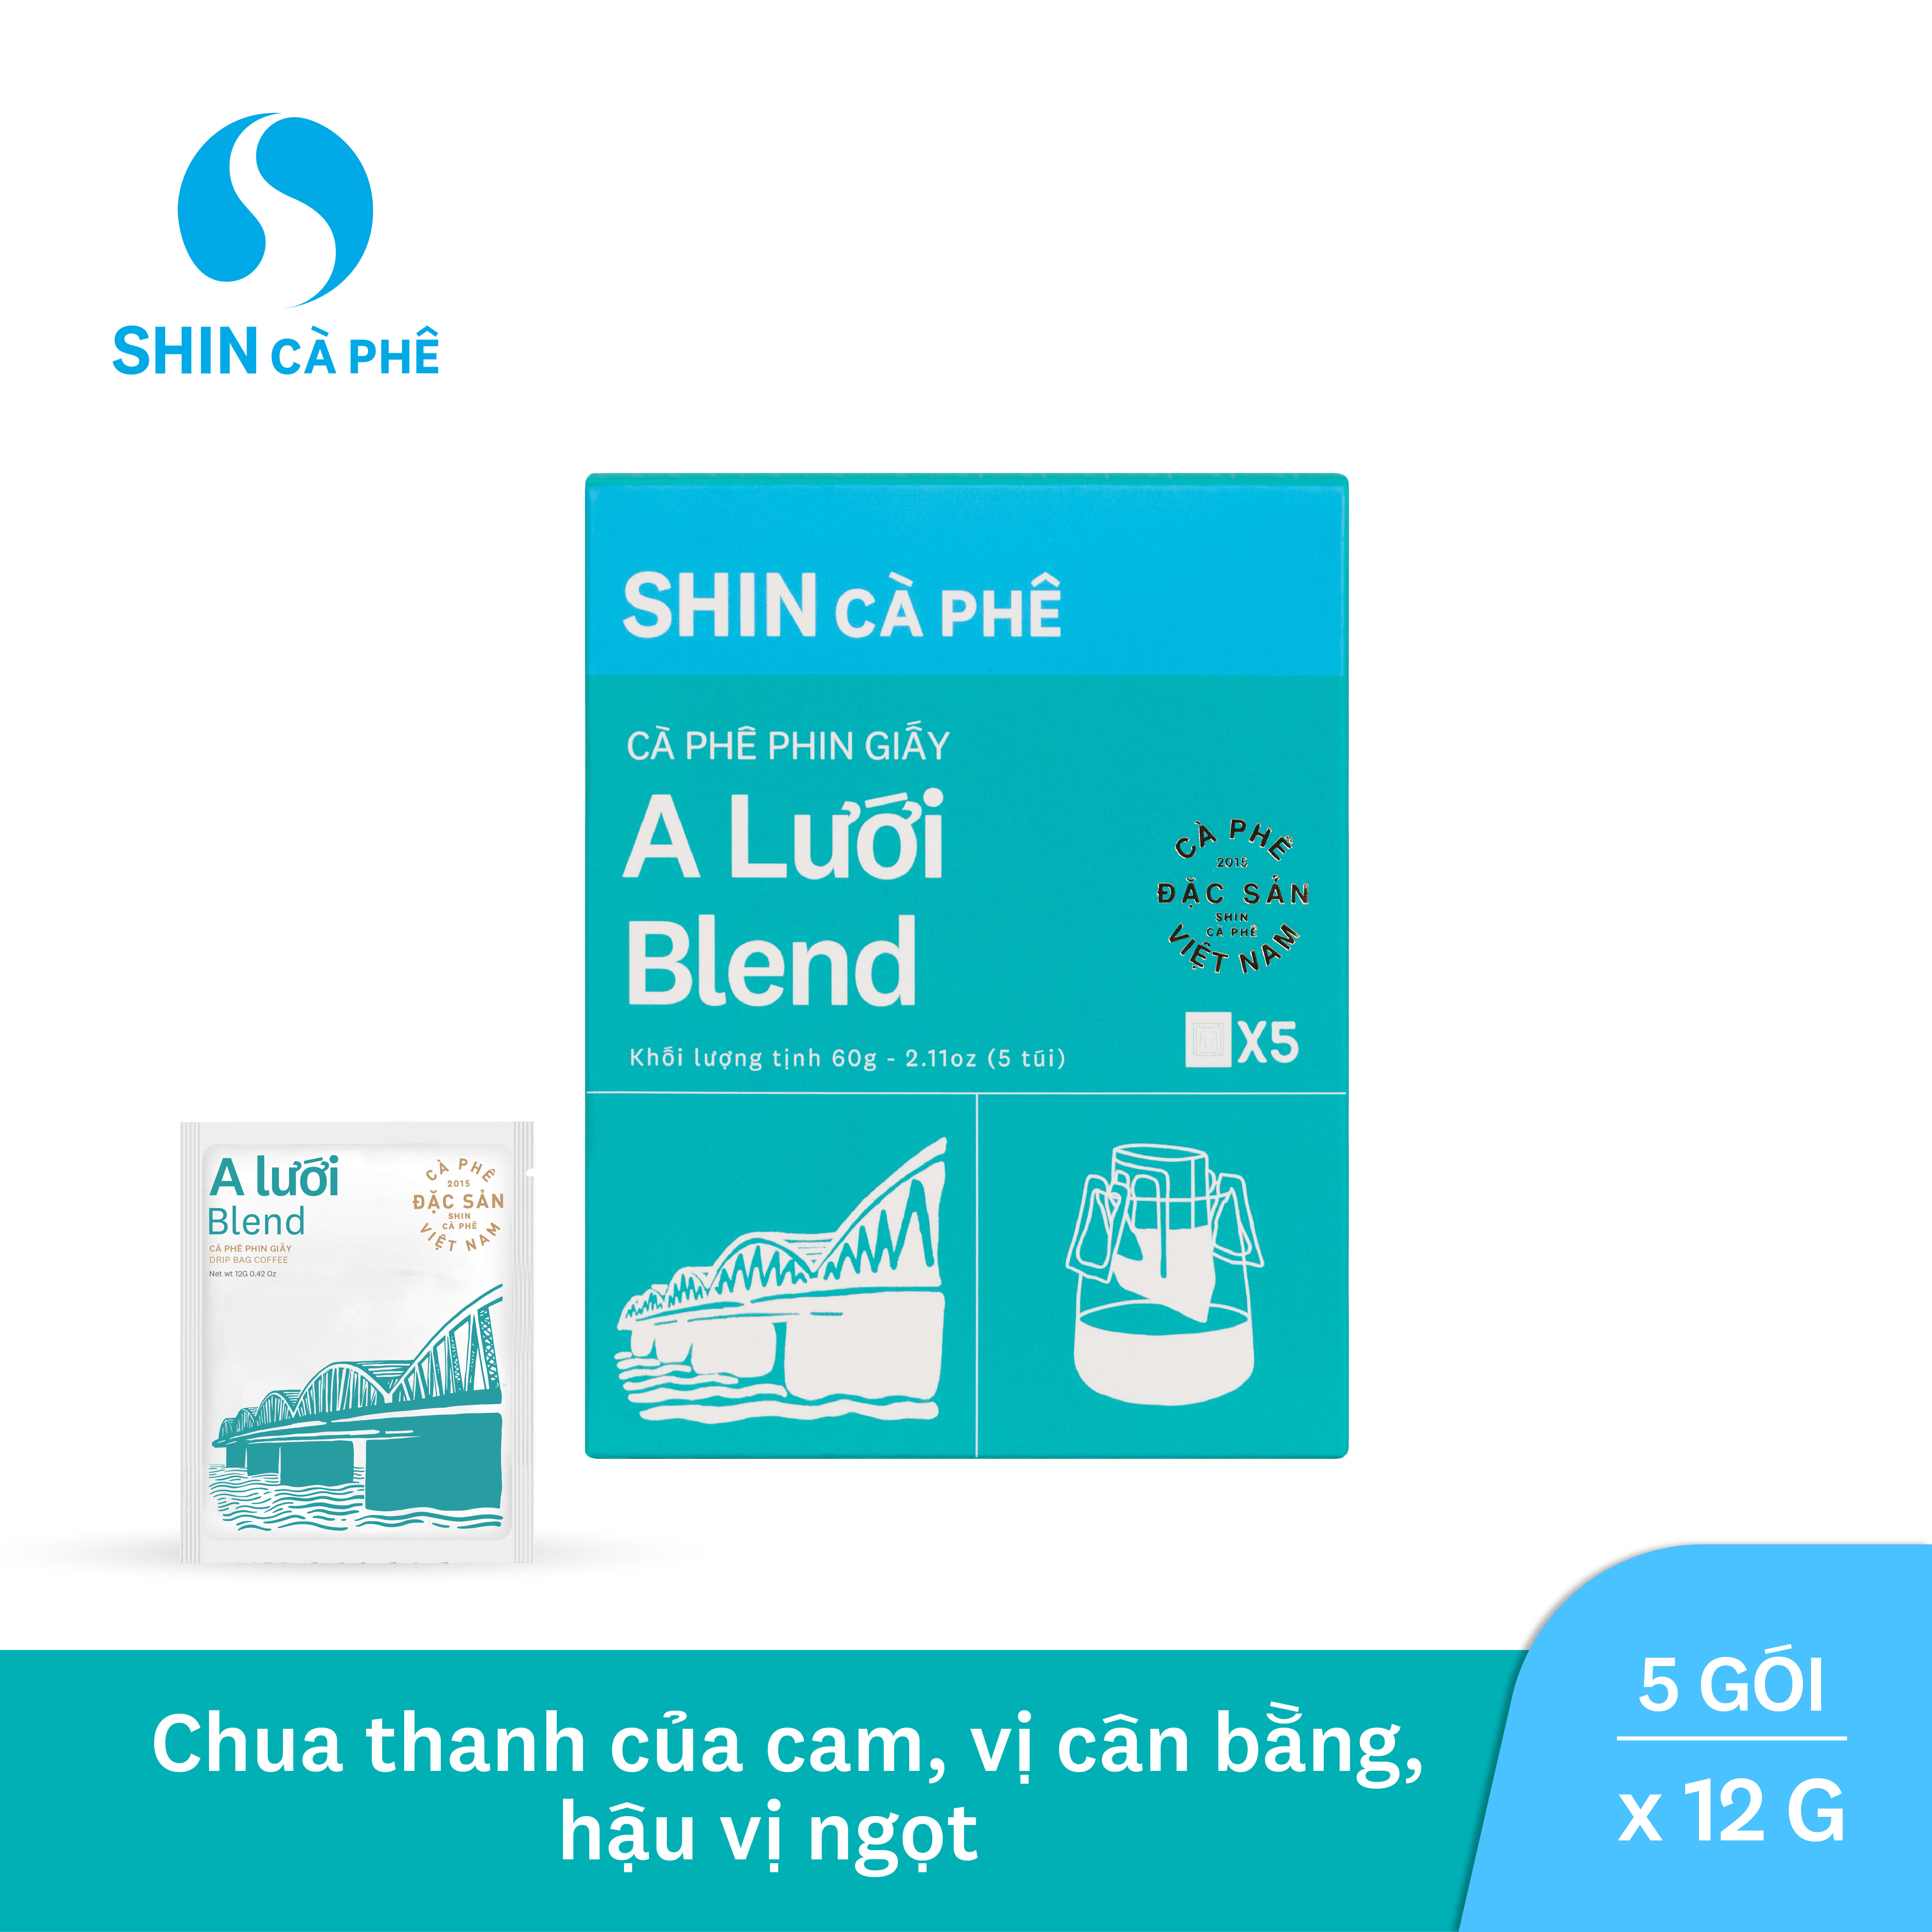 SHIN Cà Phê - A Lưới Blend Phin Giấy tiện lợi hộp 5 gói